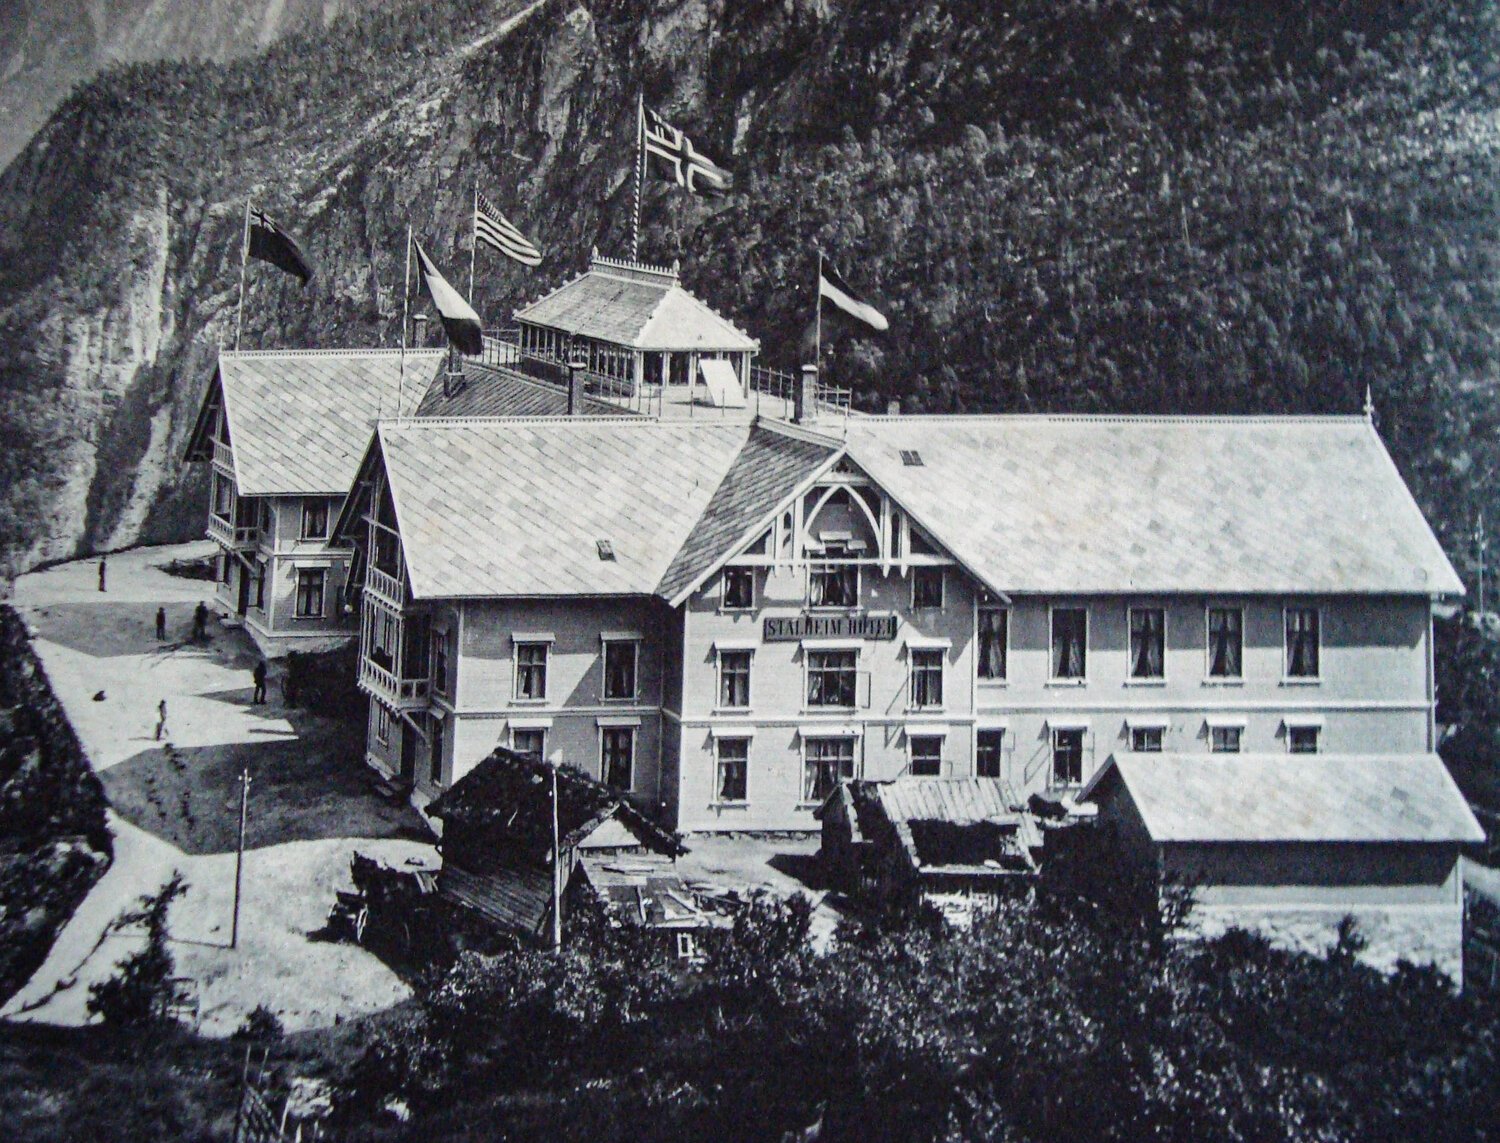  Stalheim Hotel -1895 